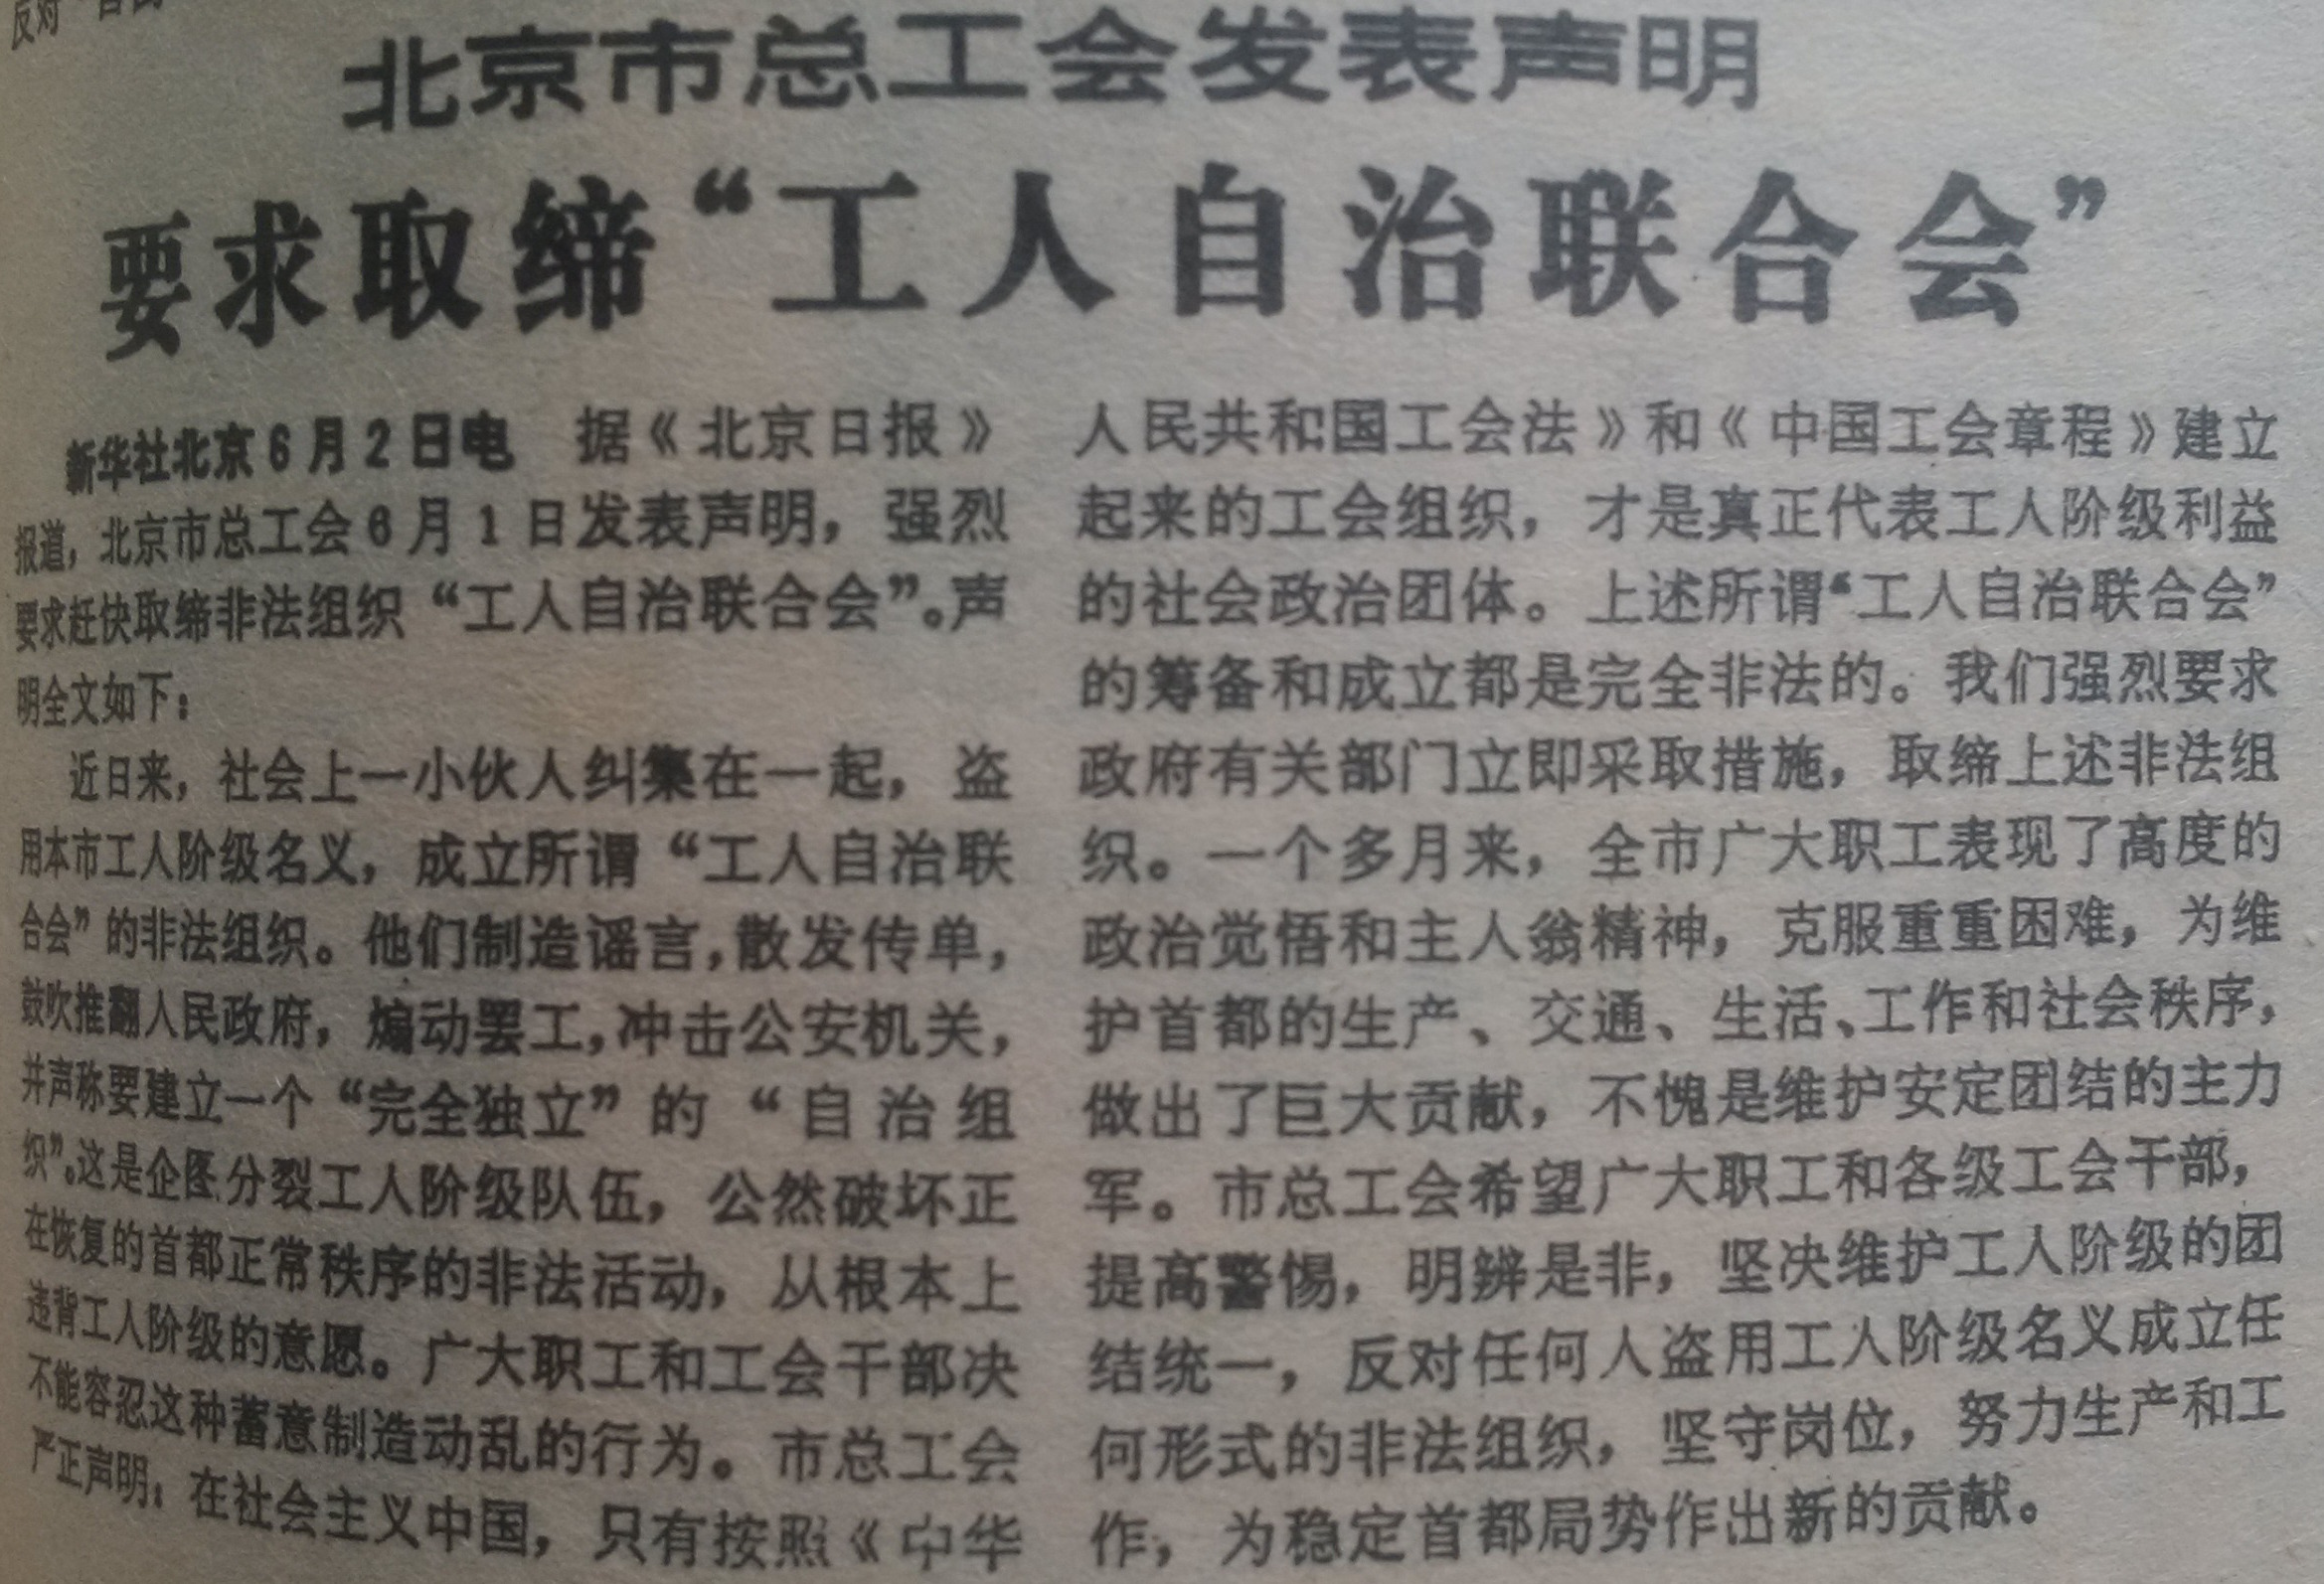 1989年6月3日《人民日报》头版刊载的北京市总工会要求取缔工自联的声明。